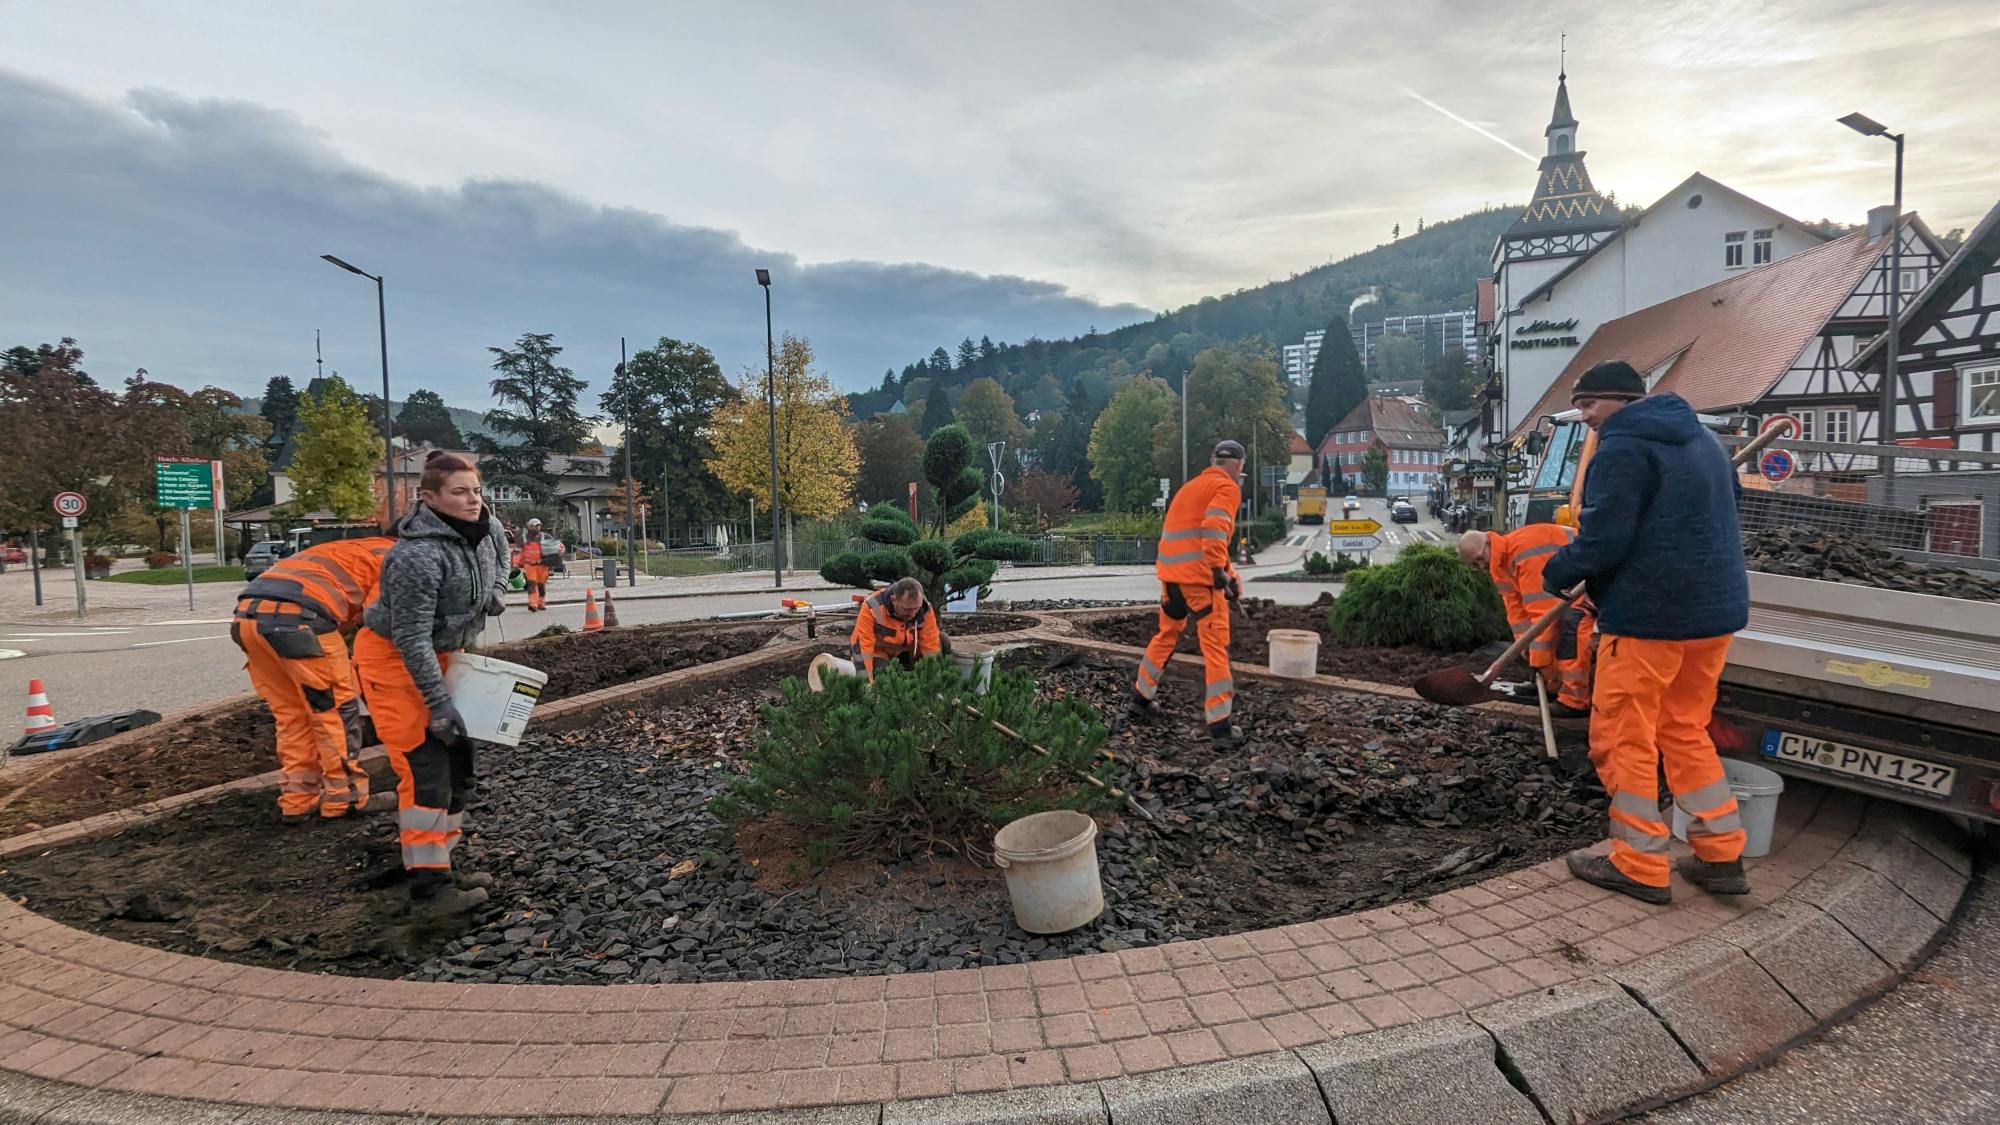 Mitarbeiter des Herrenalber Bauhofs bei den Arbeiten zur Begrünung der Verkehrsinsel am Rathausplatz.